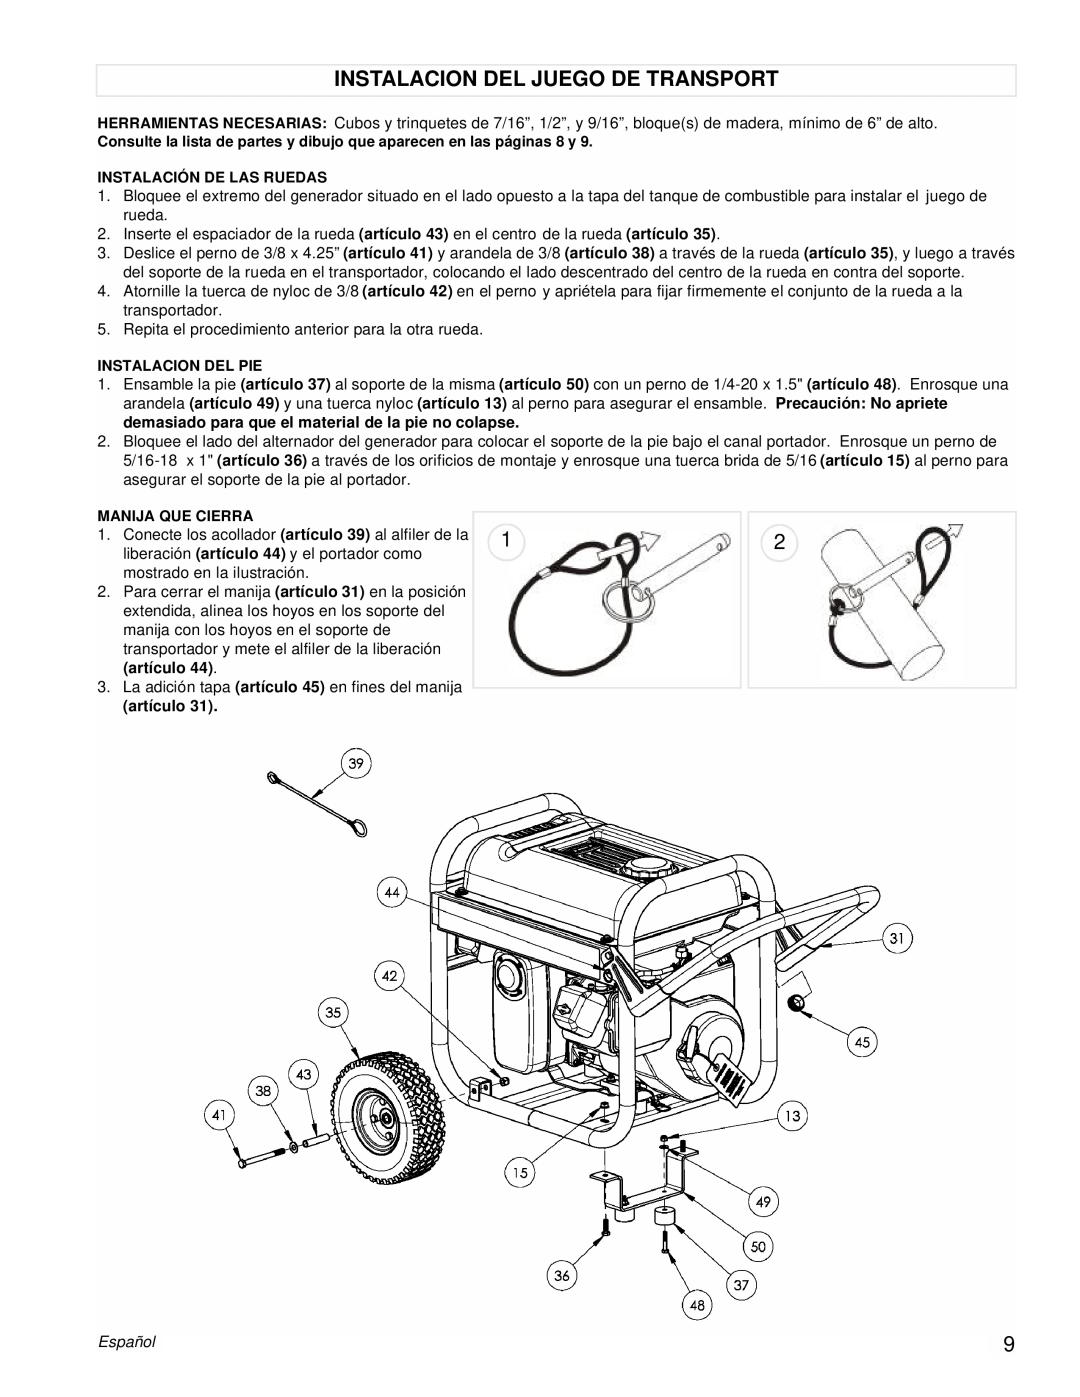 Powermate PMC543250 manual Instalacion Del Juego De Transport, artículo, Español 